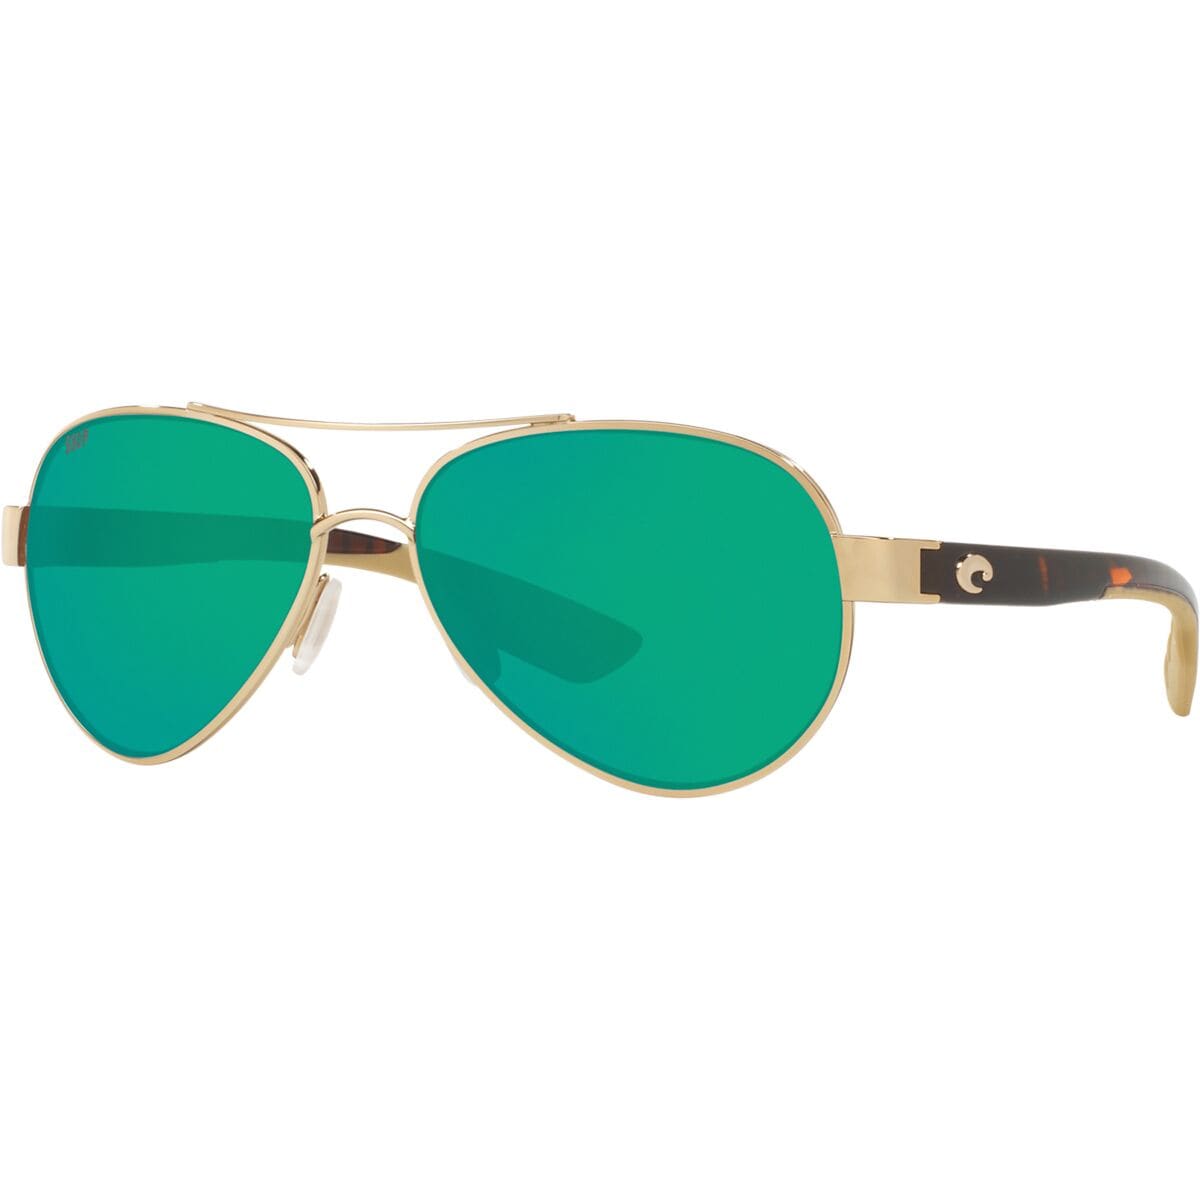 Costa Loreto 580P Polarized Sunglasses - Accessories